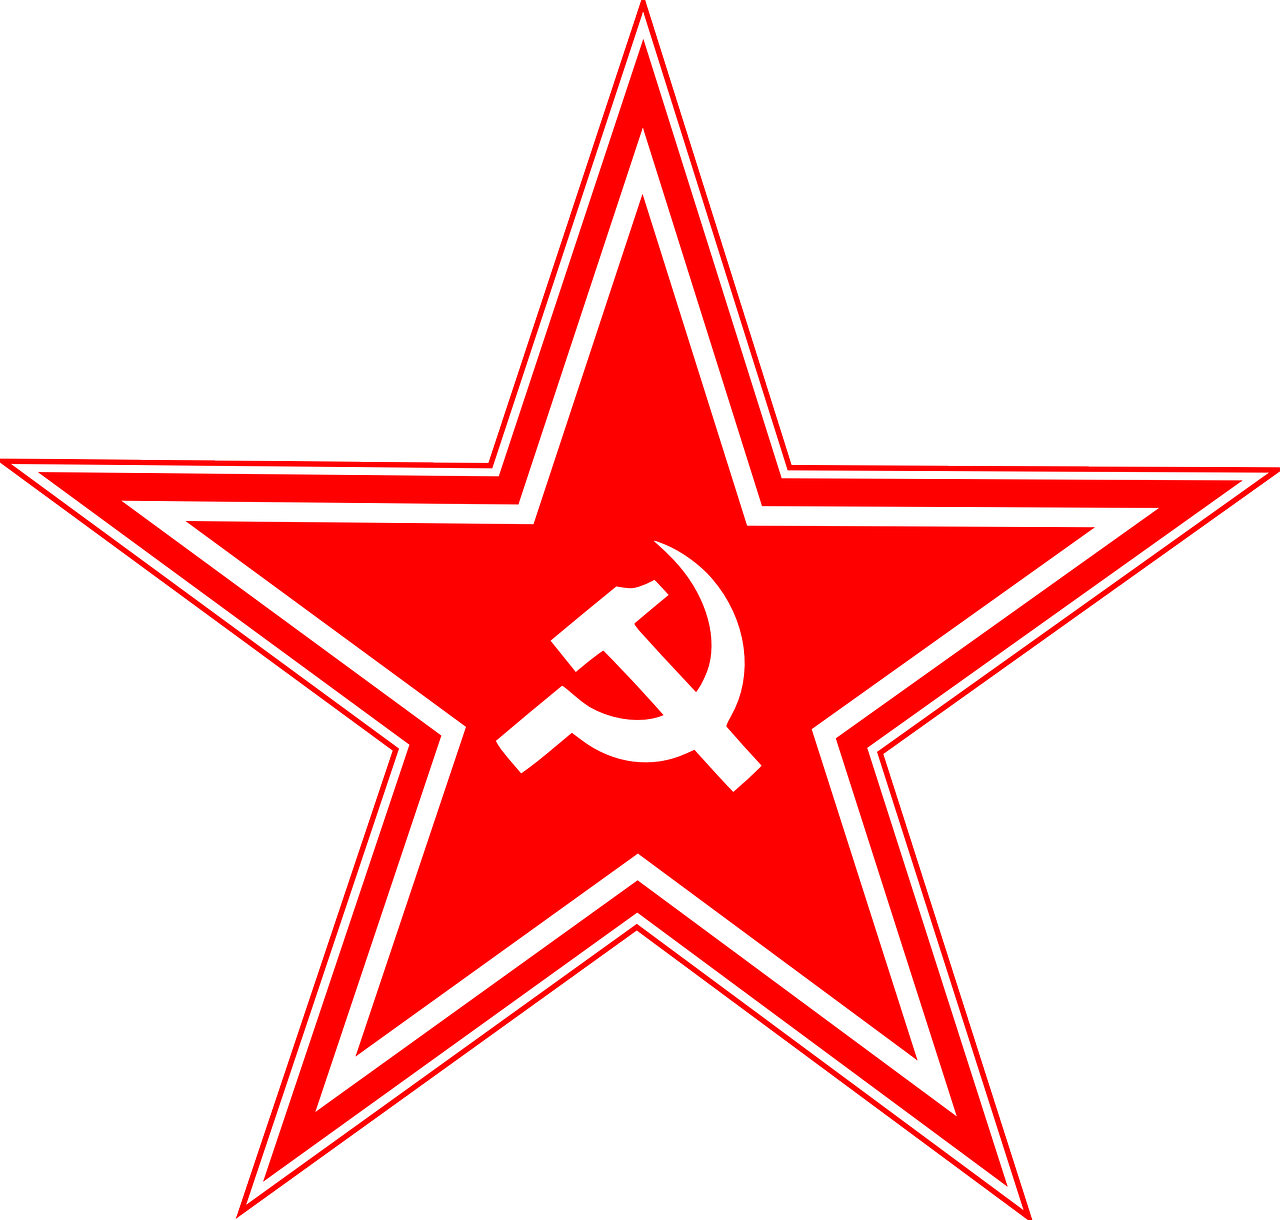 Žvaigždė, Rusija, Sovietinė, Ussr, Komunizmas, Plaktukas, Raudona, Rusų, Pjautuvas, Socializmas